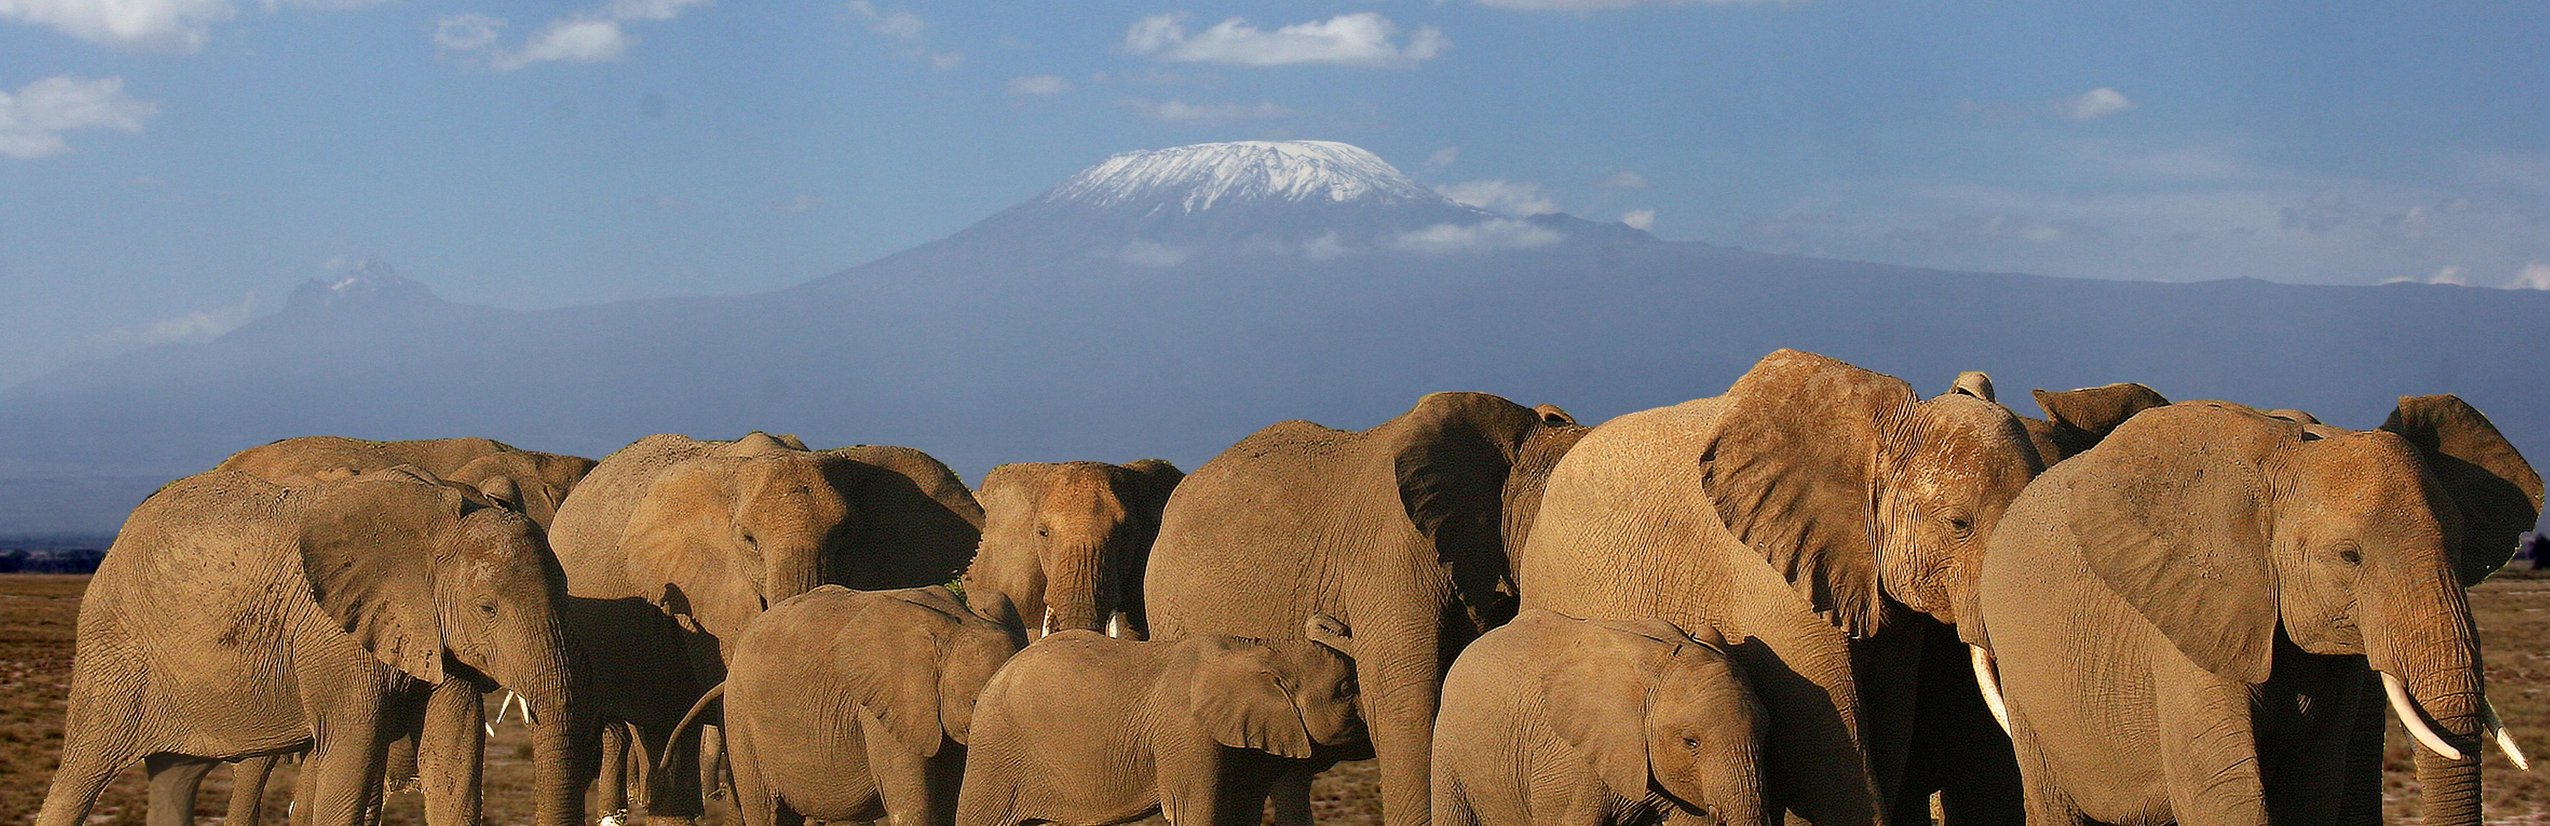 Kenia Familienreise - Kenia Familienurlaub - Elefanten vor Kilimandscharo